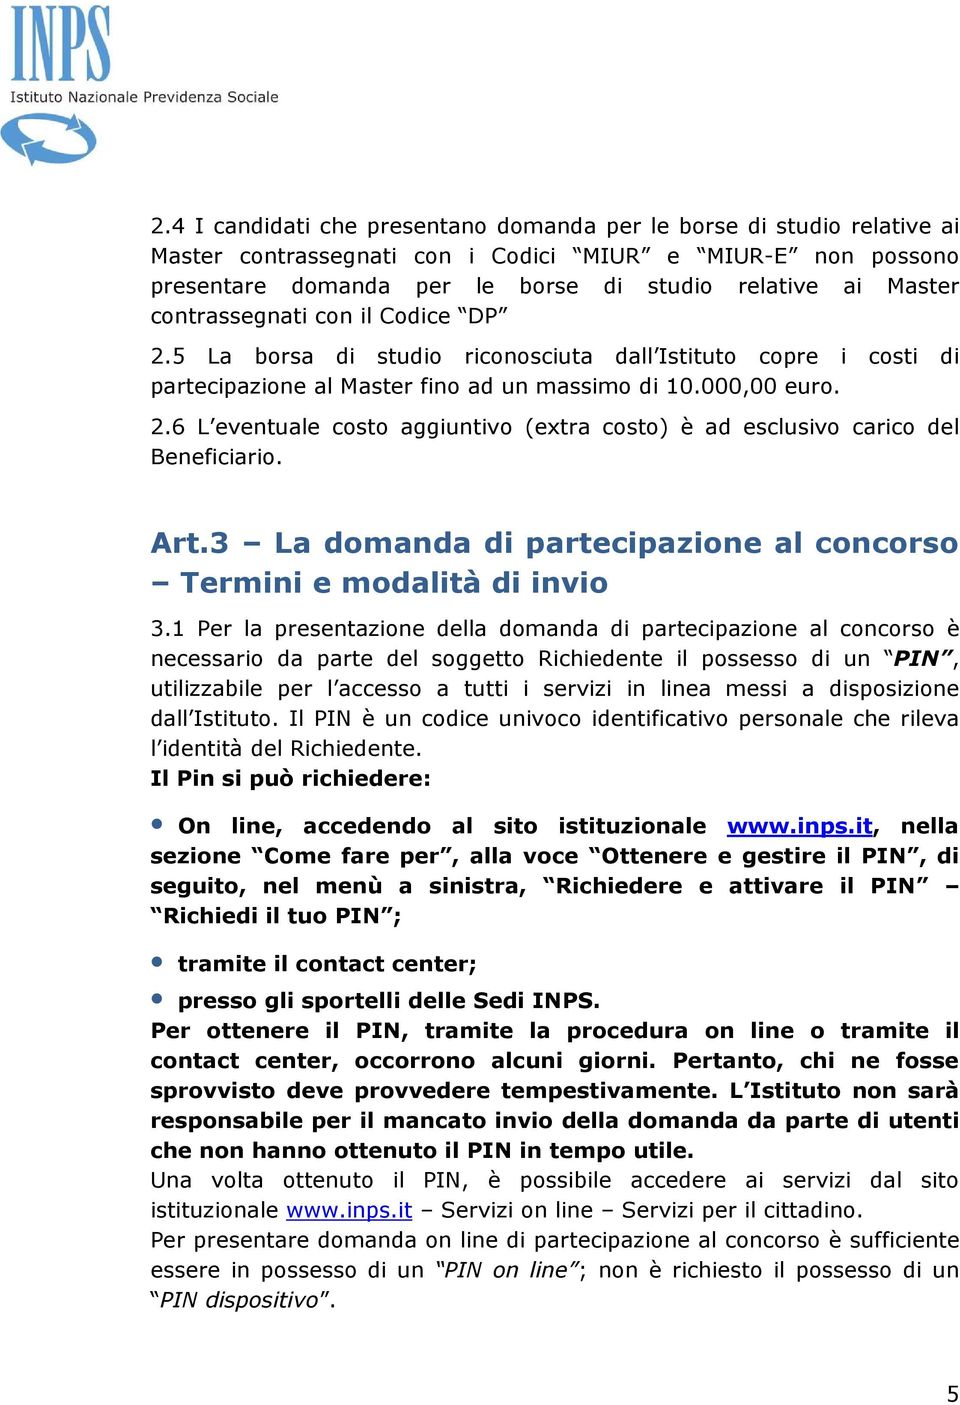 Art.3 La domanda di partecipazione al concorso Termini e modalità di invio 3.